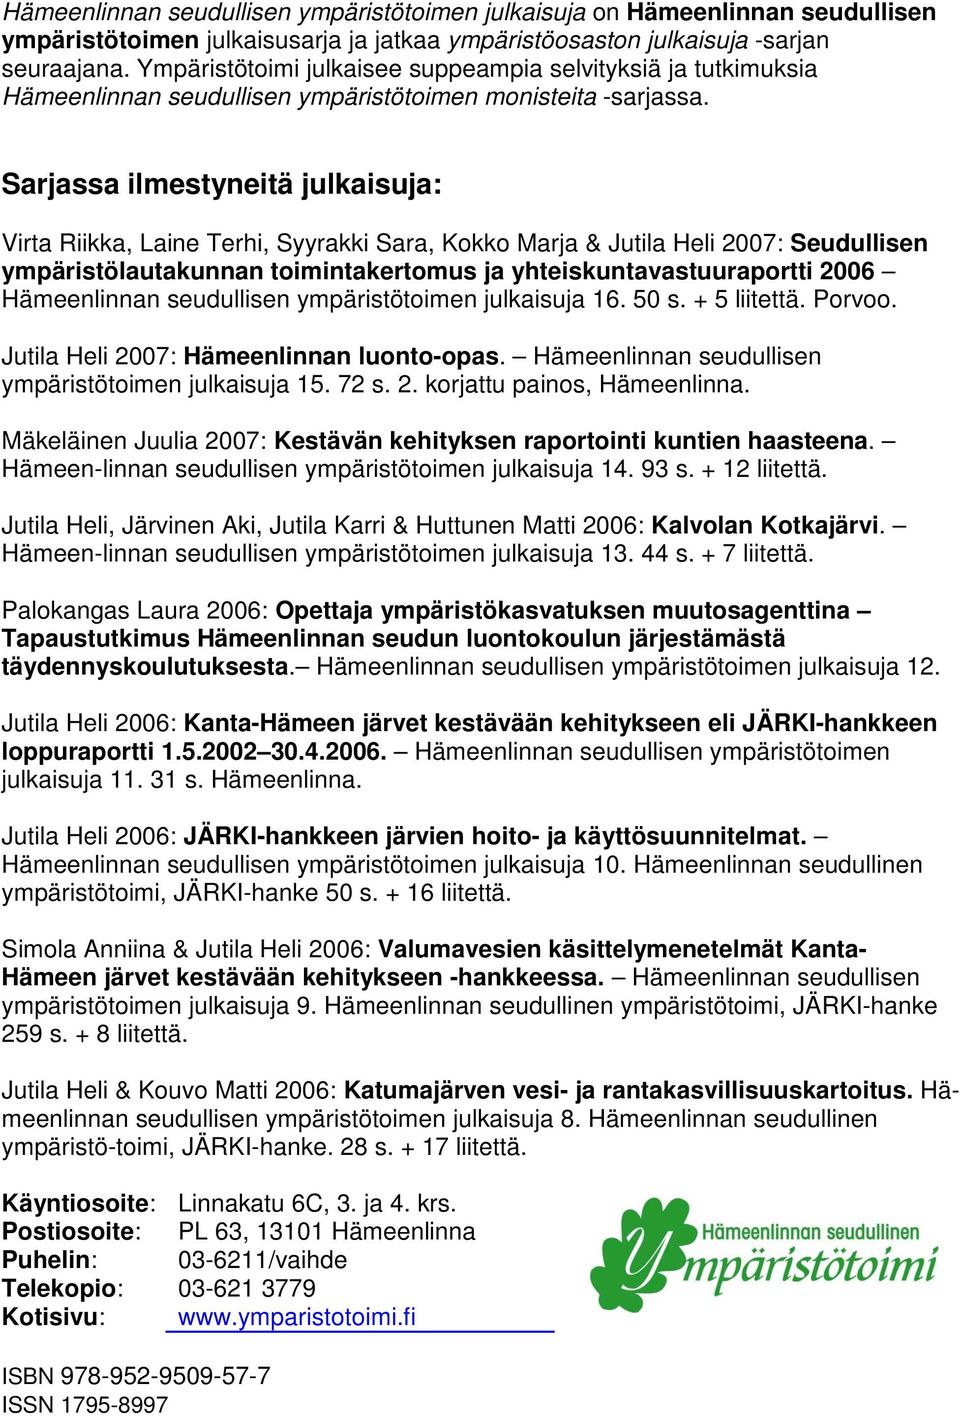 Sarjassa ilmestyneitä julkaisuja: Virta Riikka, Laine Terhi, Syyrakki Sara, Kkk Marja & Jutila Heli 2007: Seudullisen ympäristölautakunnan timintakertmus ja yhteiskuntavastuuraprtti 2006 Hämeenlinnan